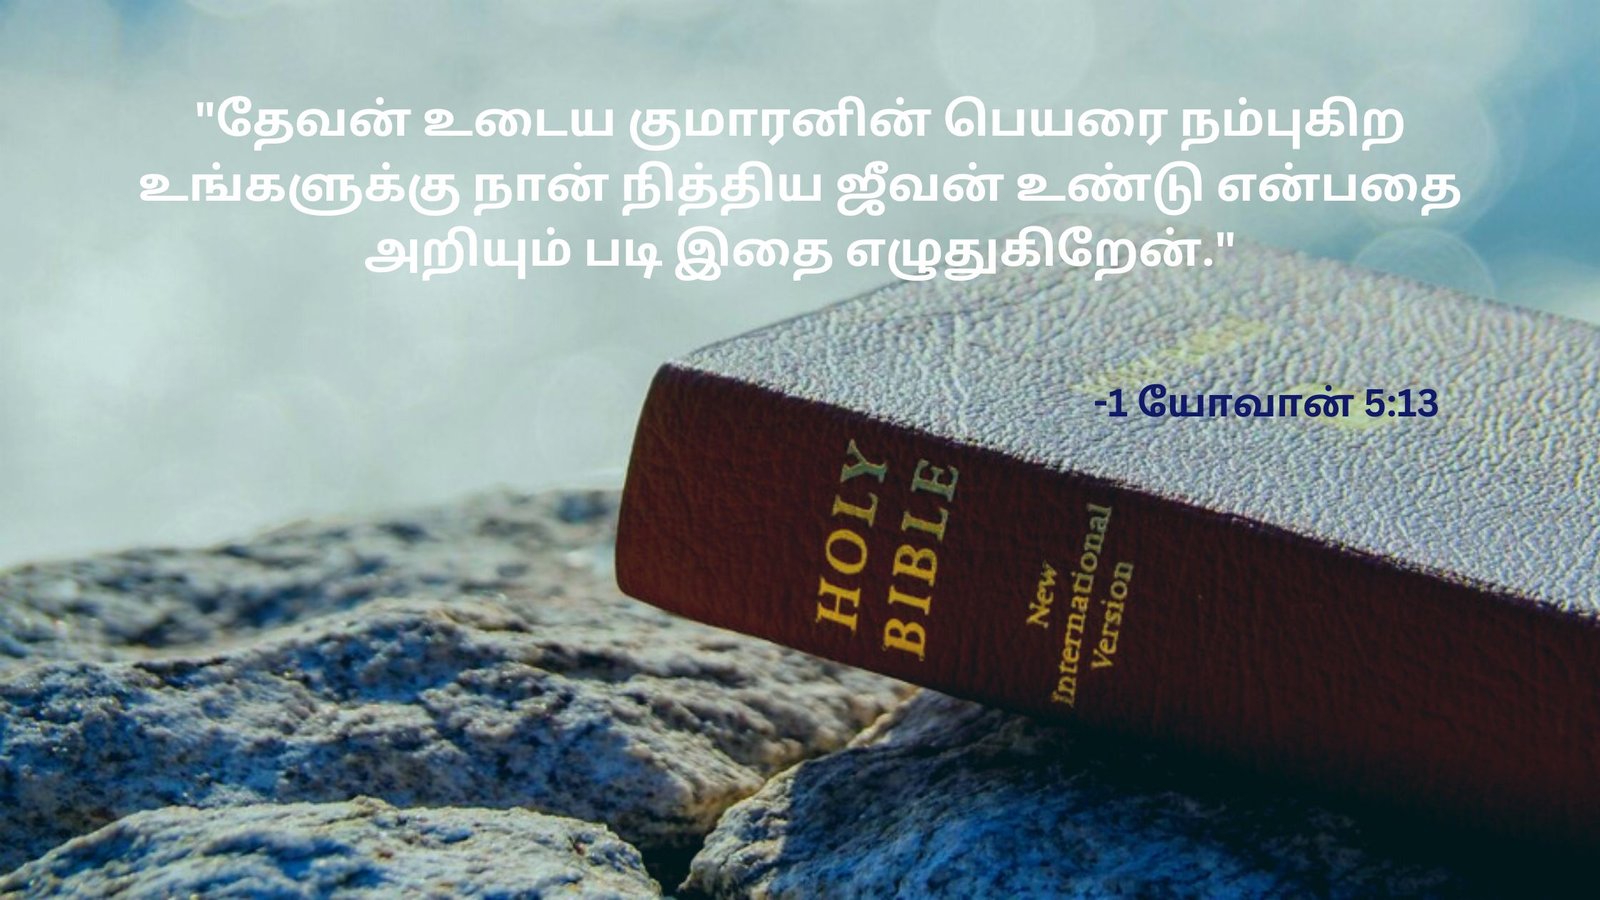 Bible verses in tamil